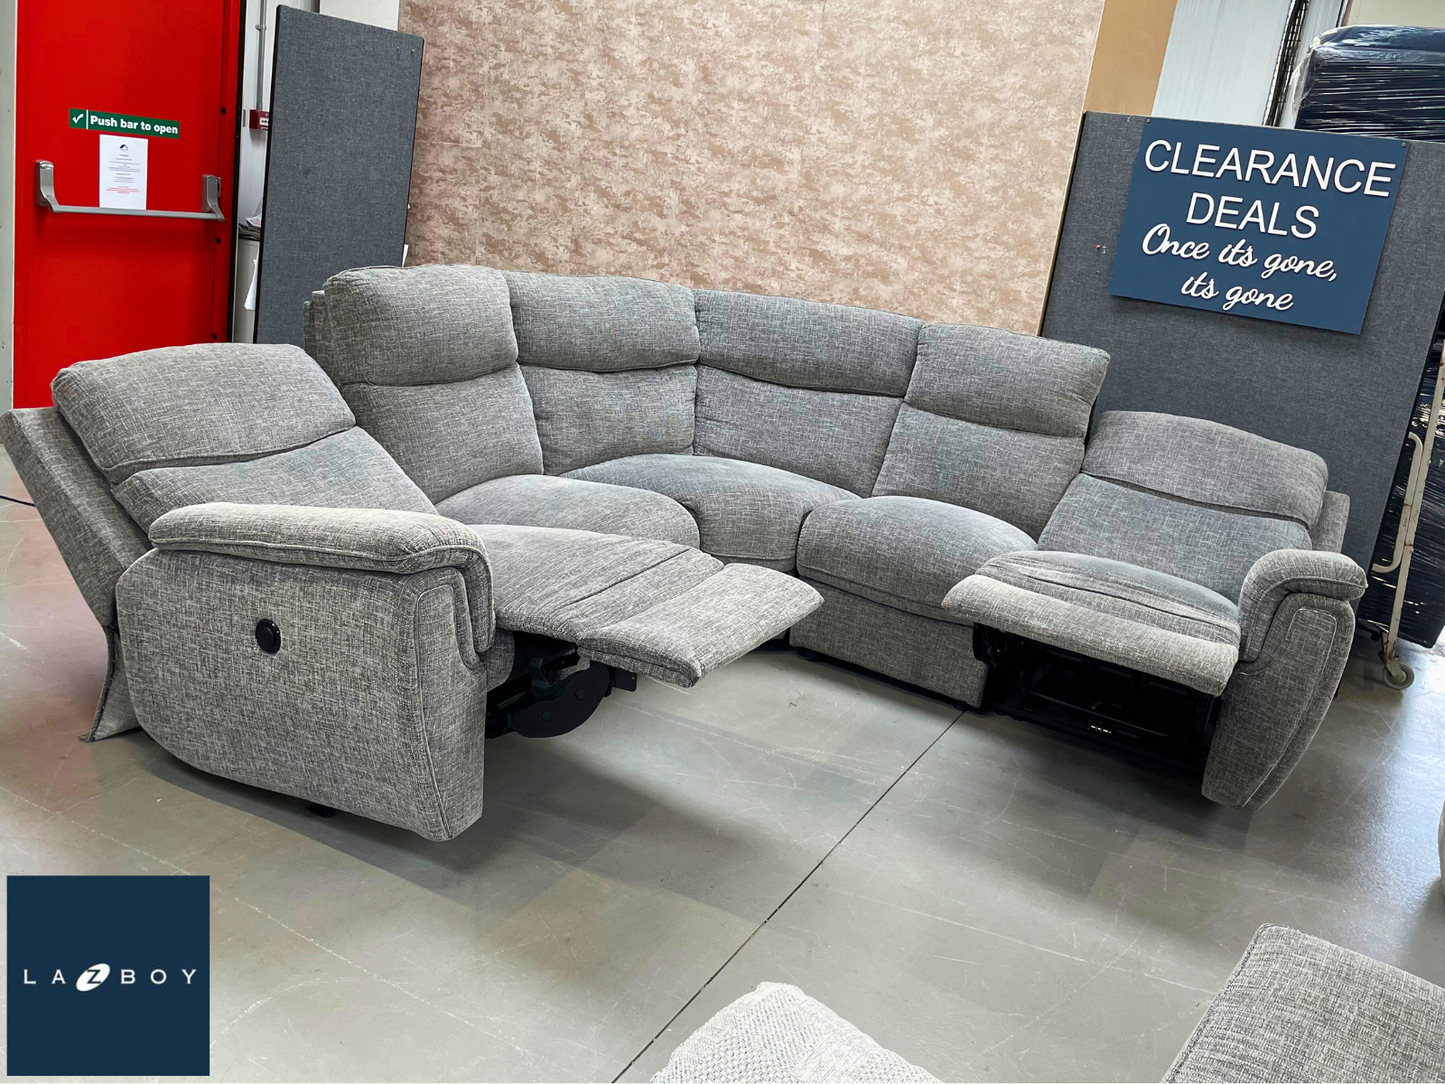 Ex Showroom - Ashton Electric Reclining Modular Corner Sofa & Storage Stool - Grey Fabric